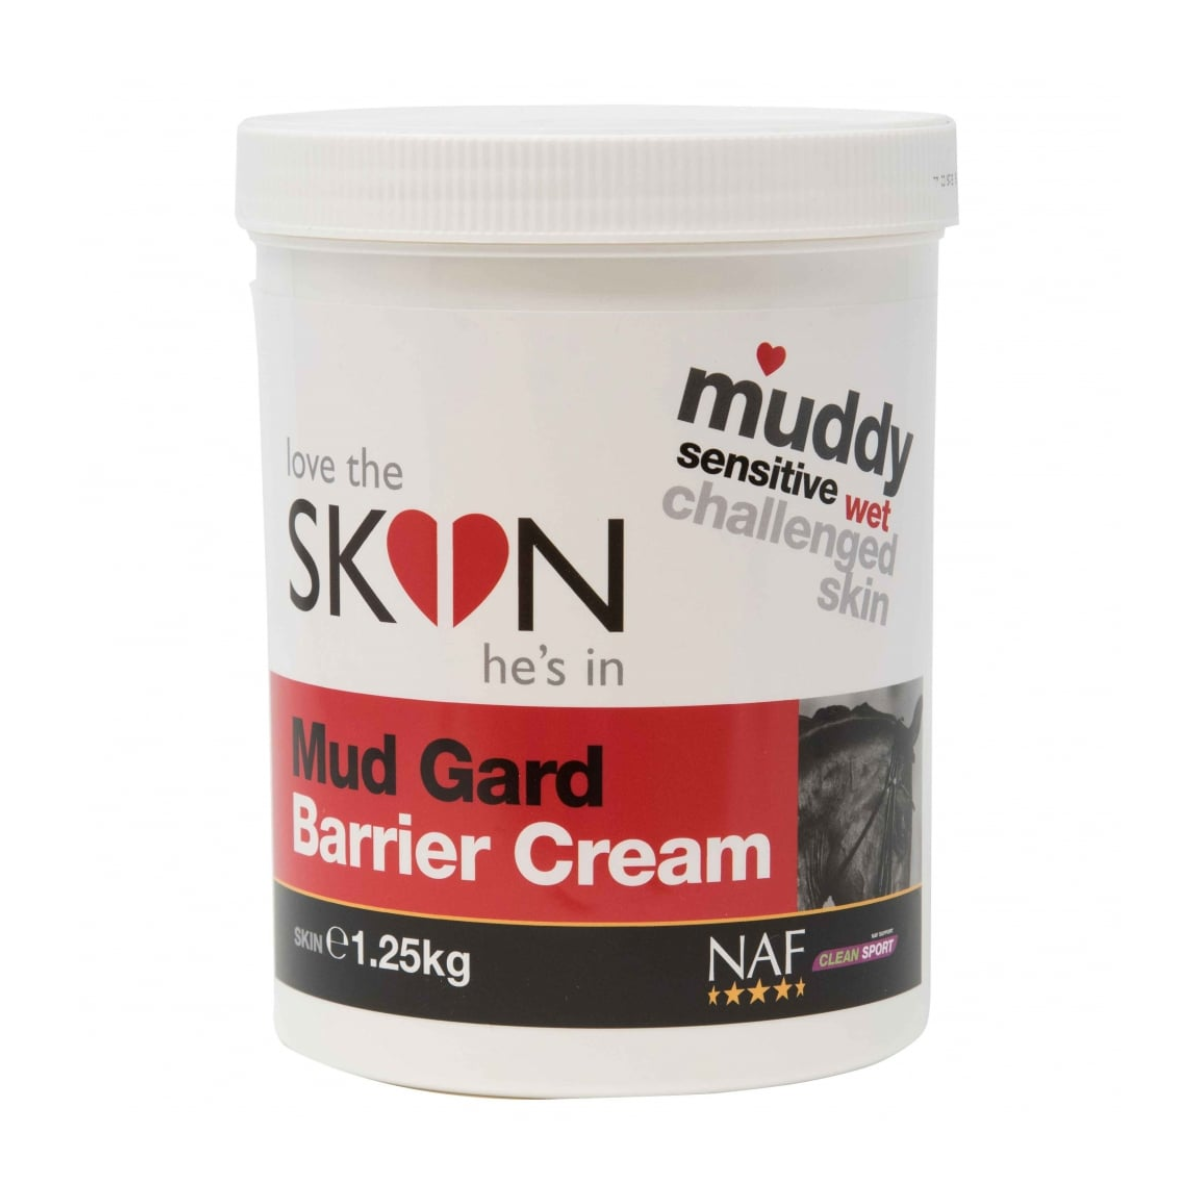 NAF Mud Gard Barrier Cream – 1.25kg